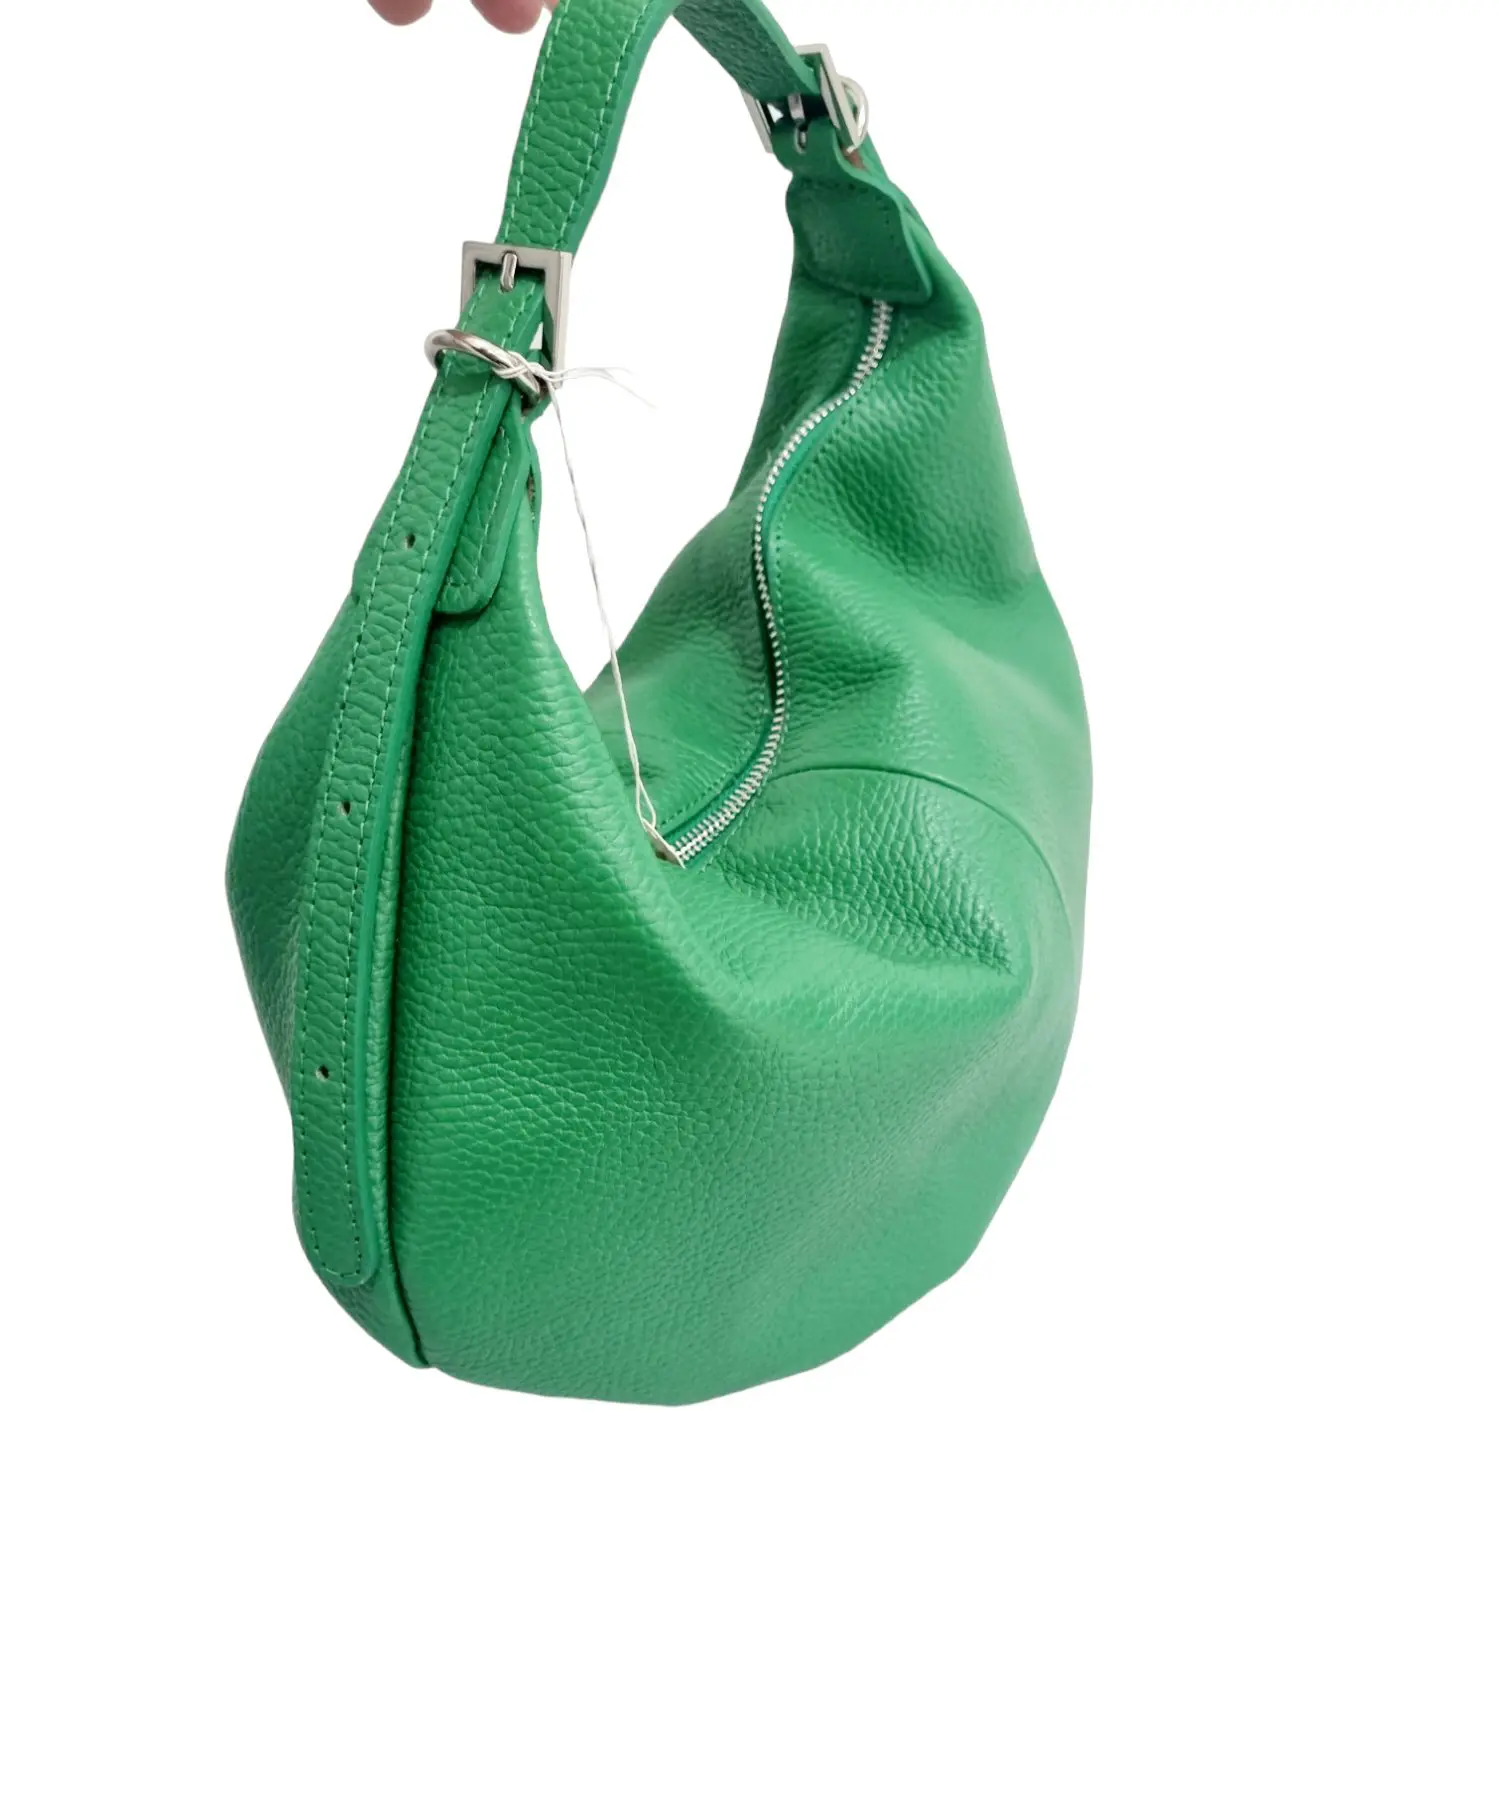 Tasche aus echtem Leder, hergestellt in Italien, mit ausziehbarem Griff, gefütterter Innenraum mit Seitentaschen in der Farbe Grün.